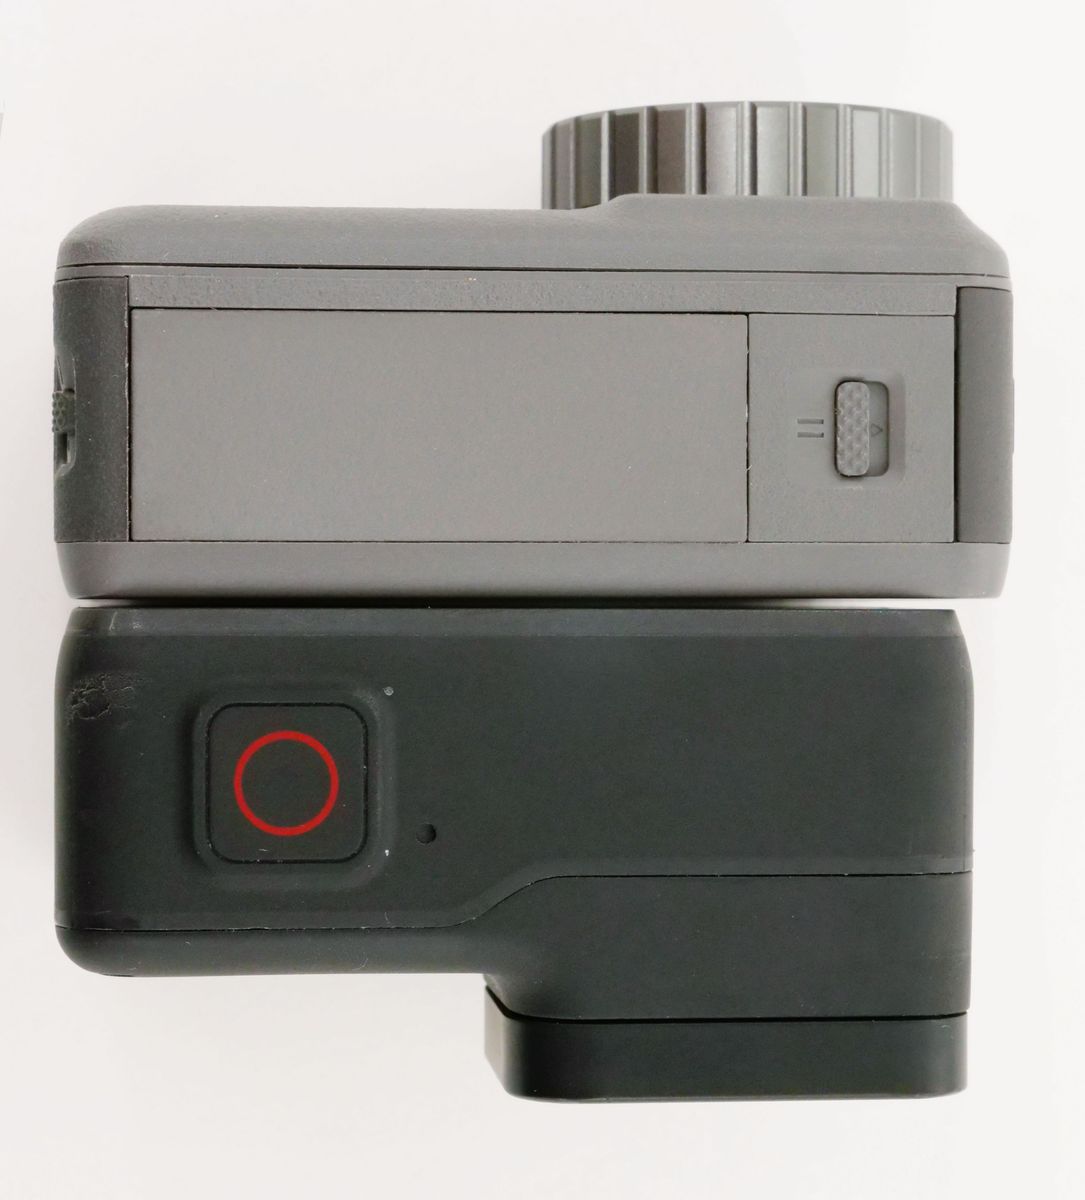 ドローンメーカーのDJIが送り出すGoProライクなアクションカメラ「Osmo Action」をGoPro HERO7 Blackと使い比べて